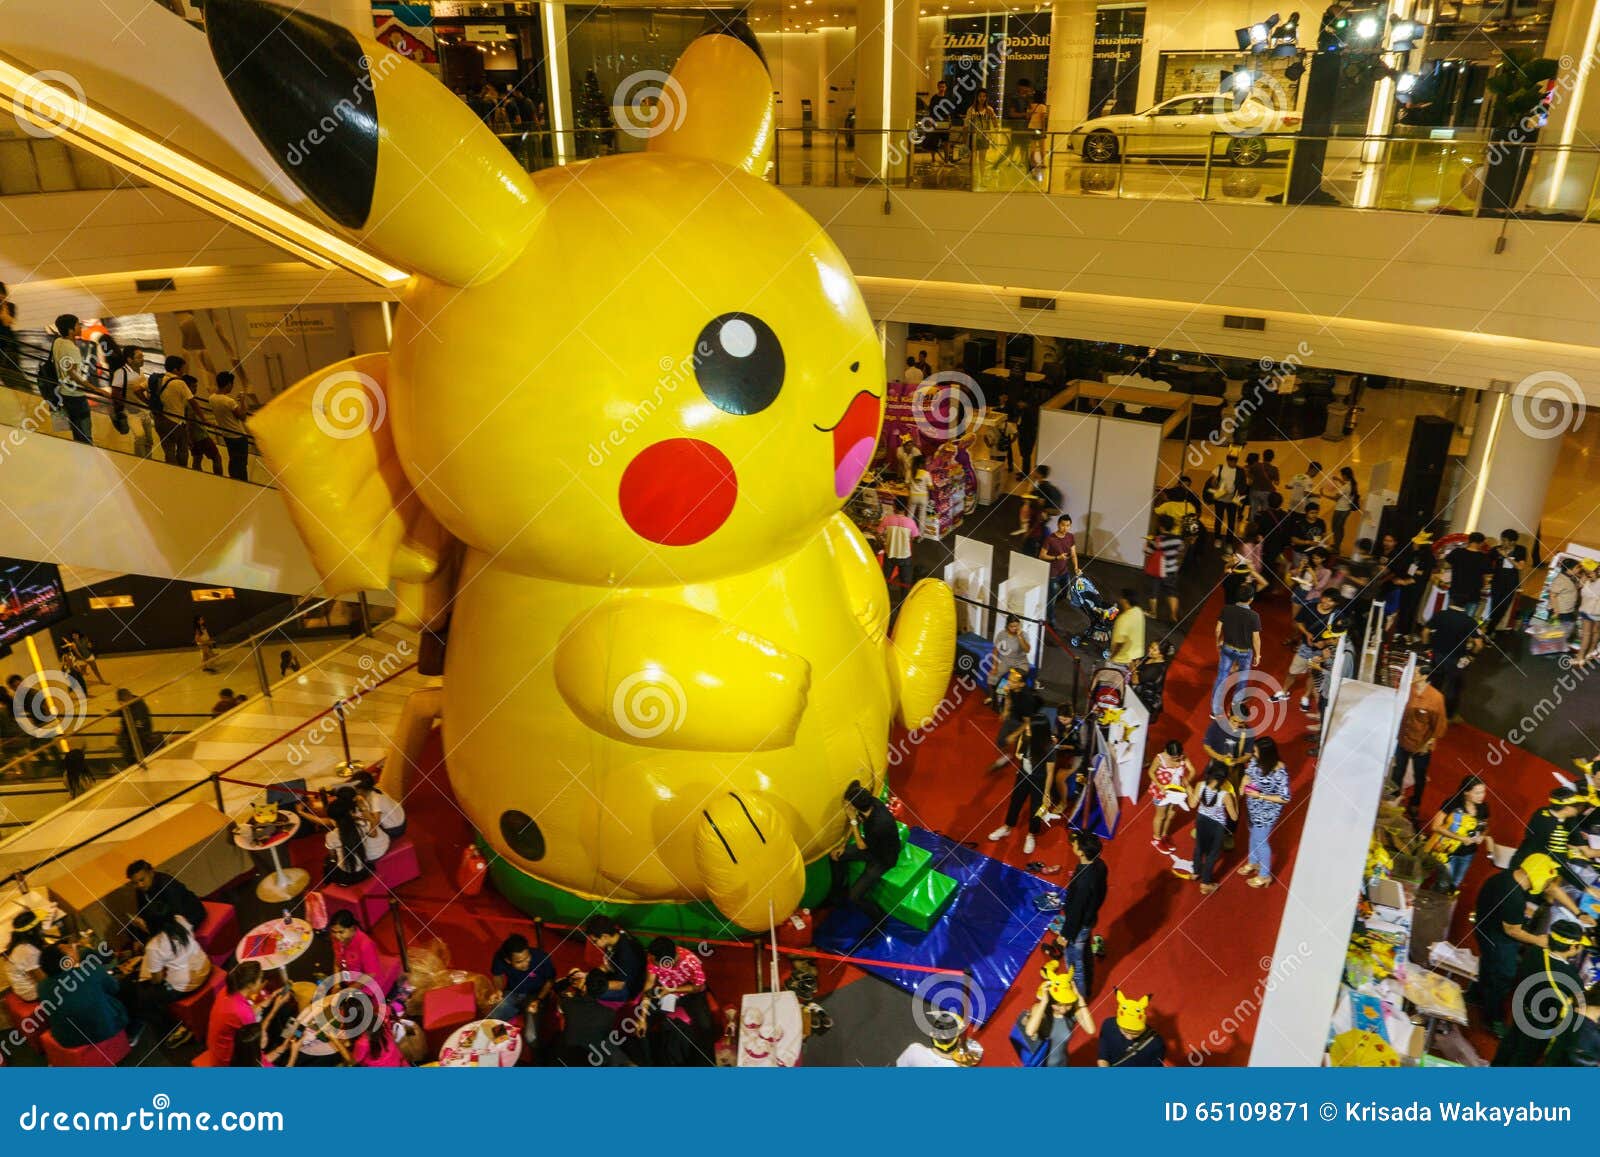 Ballon Gonflable Pikachu | Lot de Ballon Pokemon | Acheter Ballon Pikachu